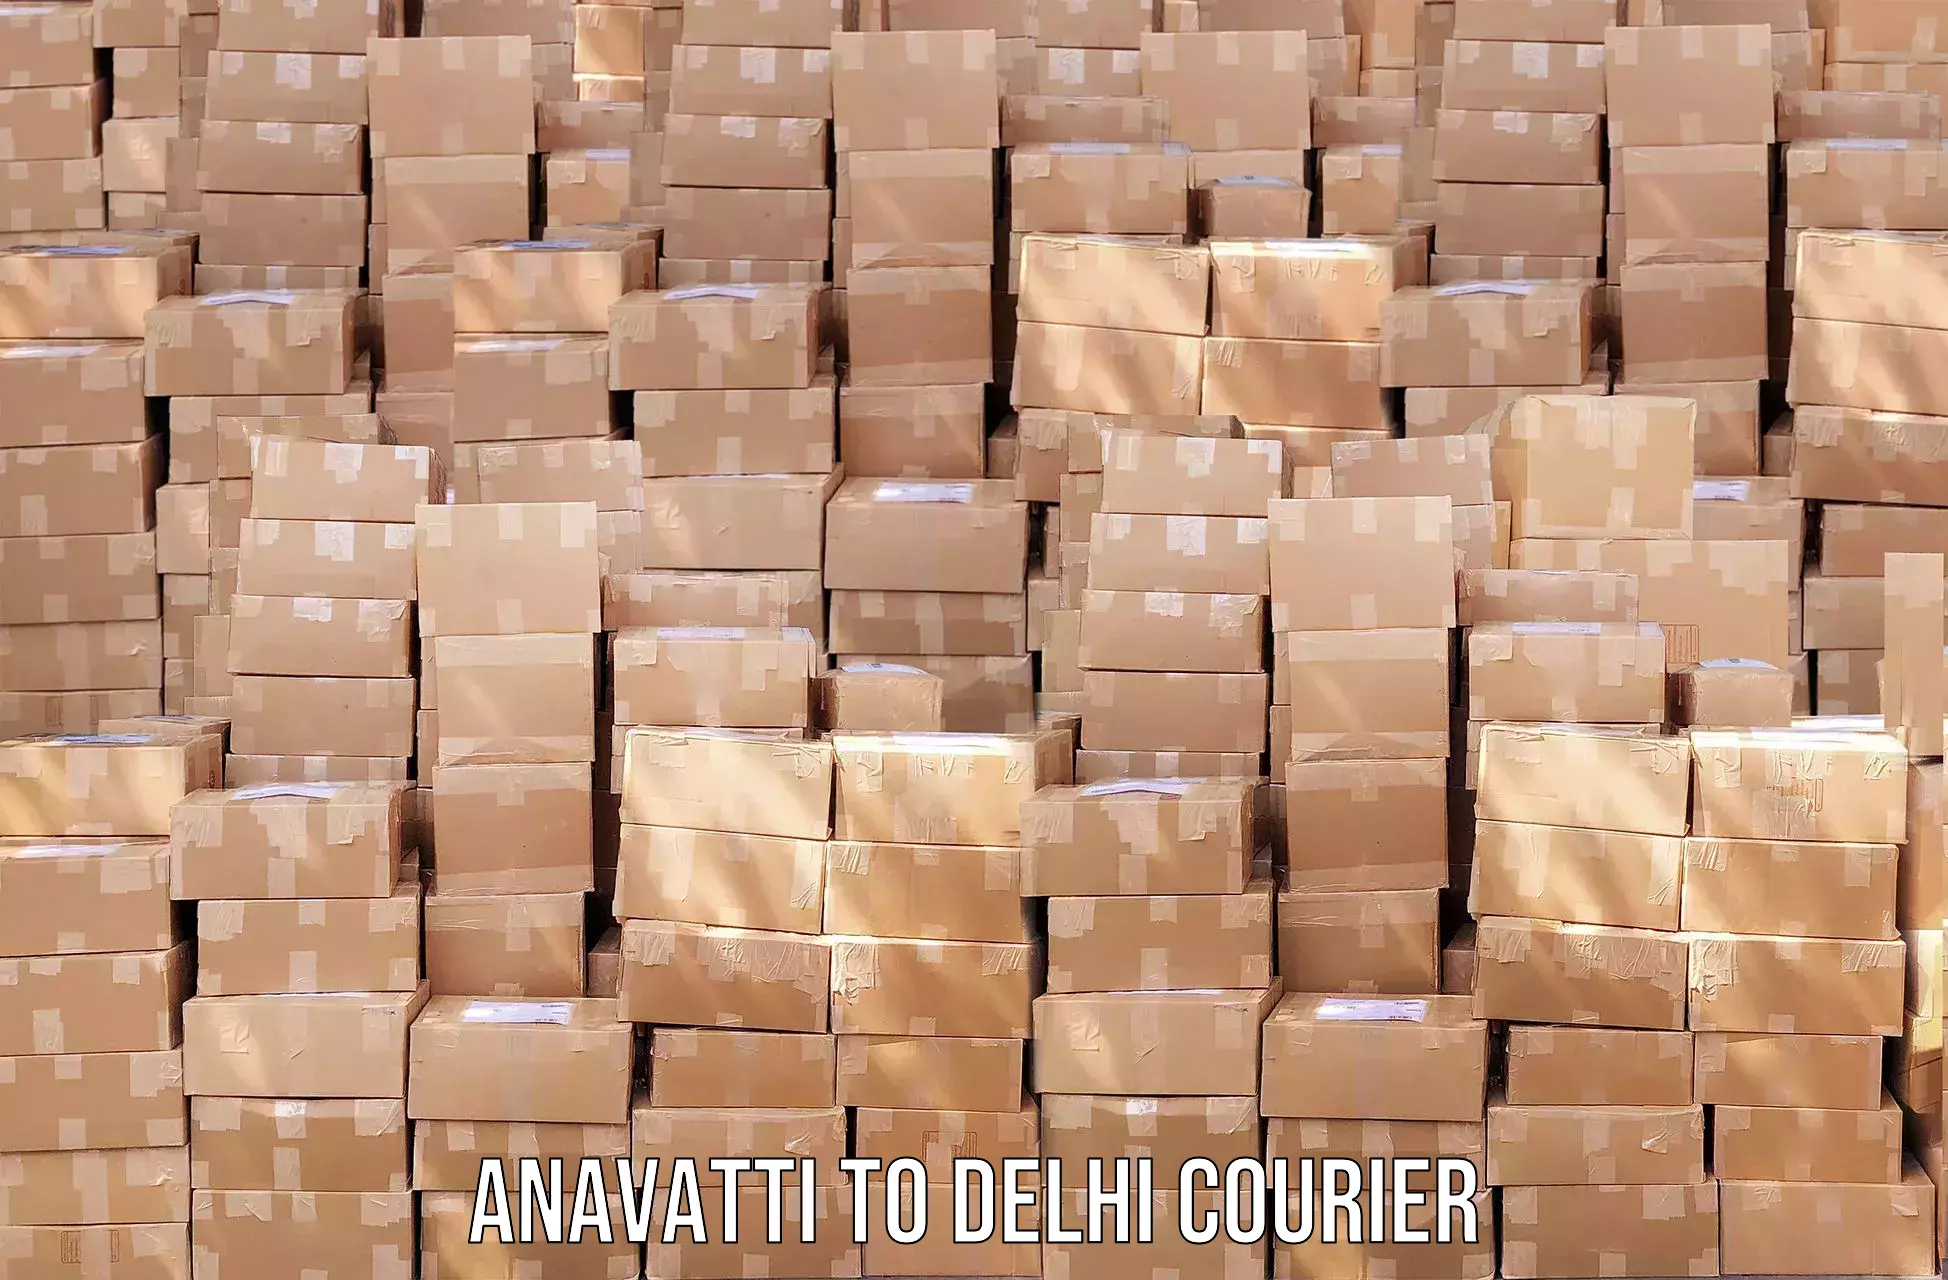 Courier service comparison in Anavatti to Indraprastha